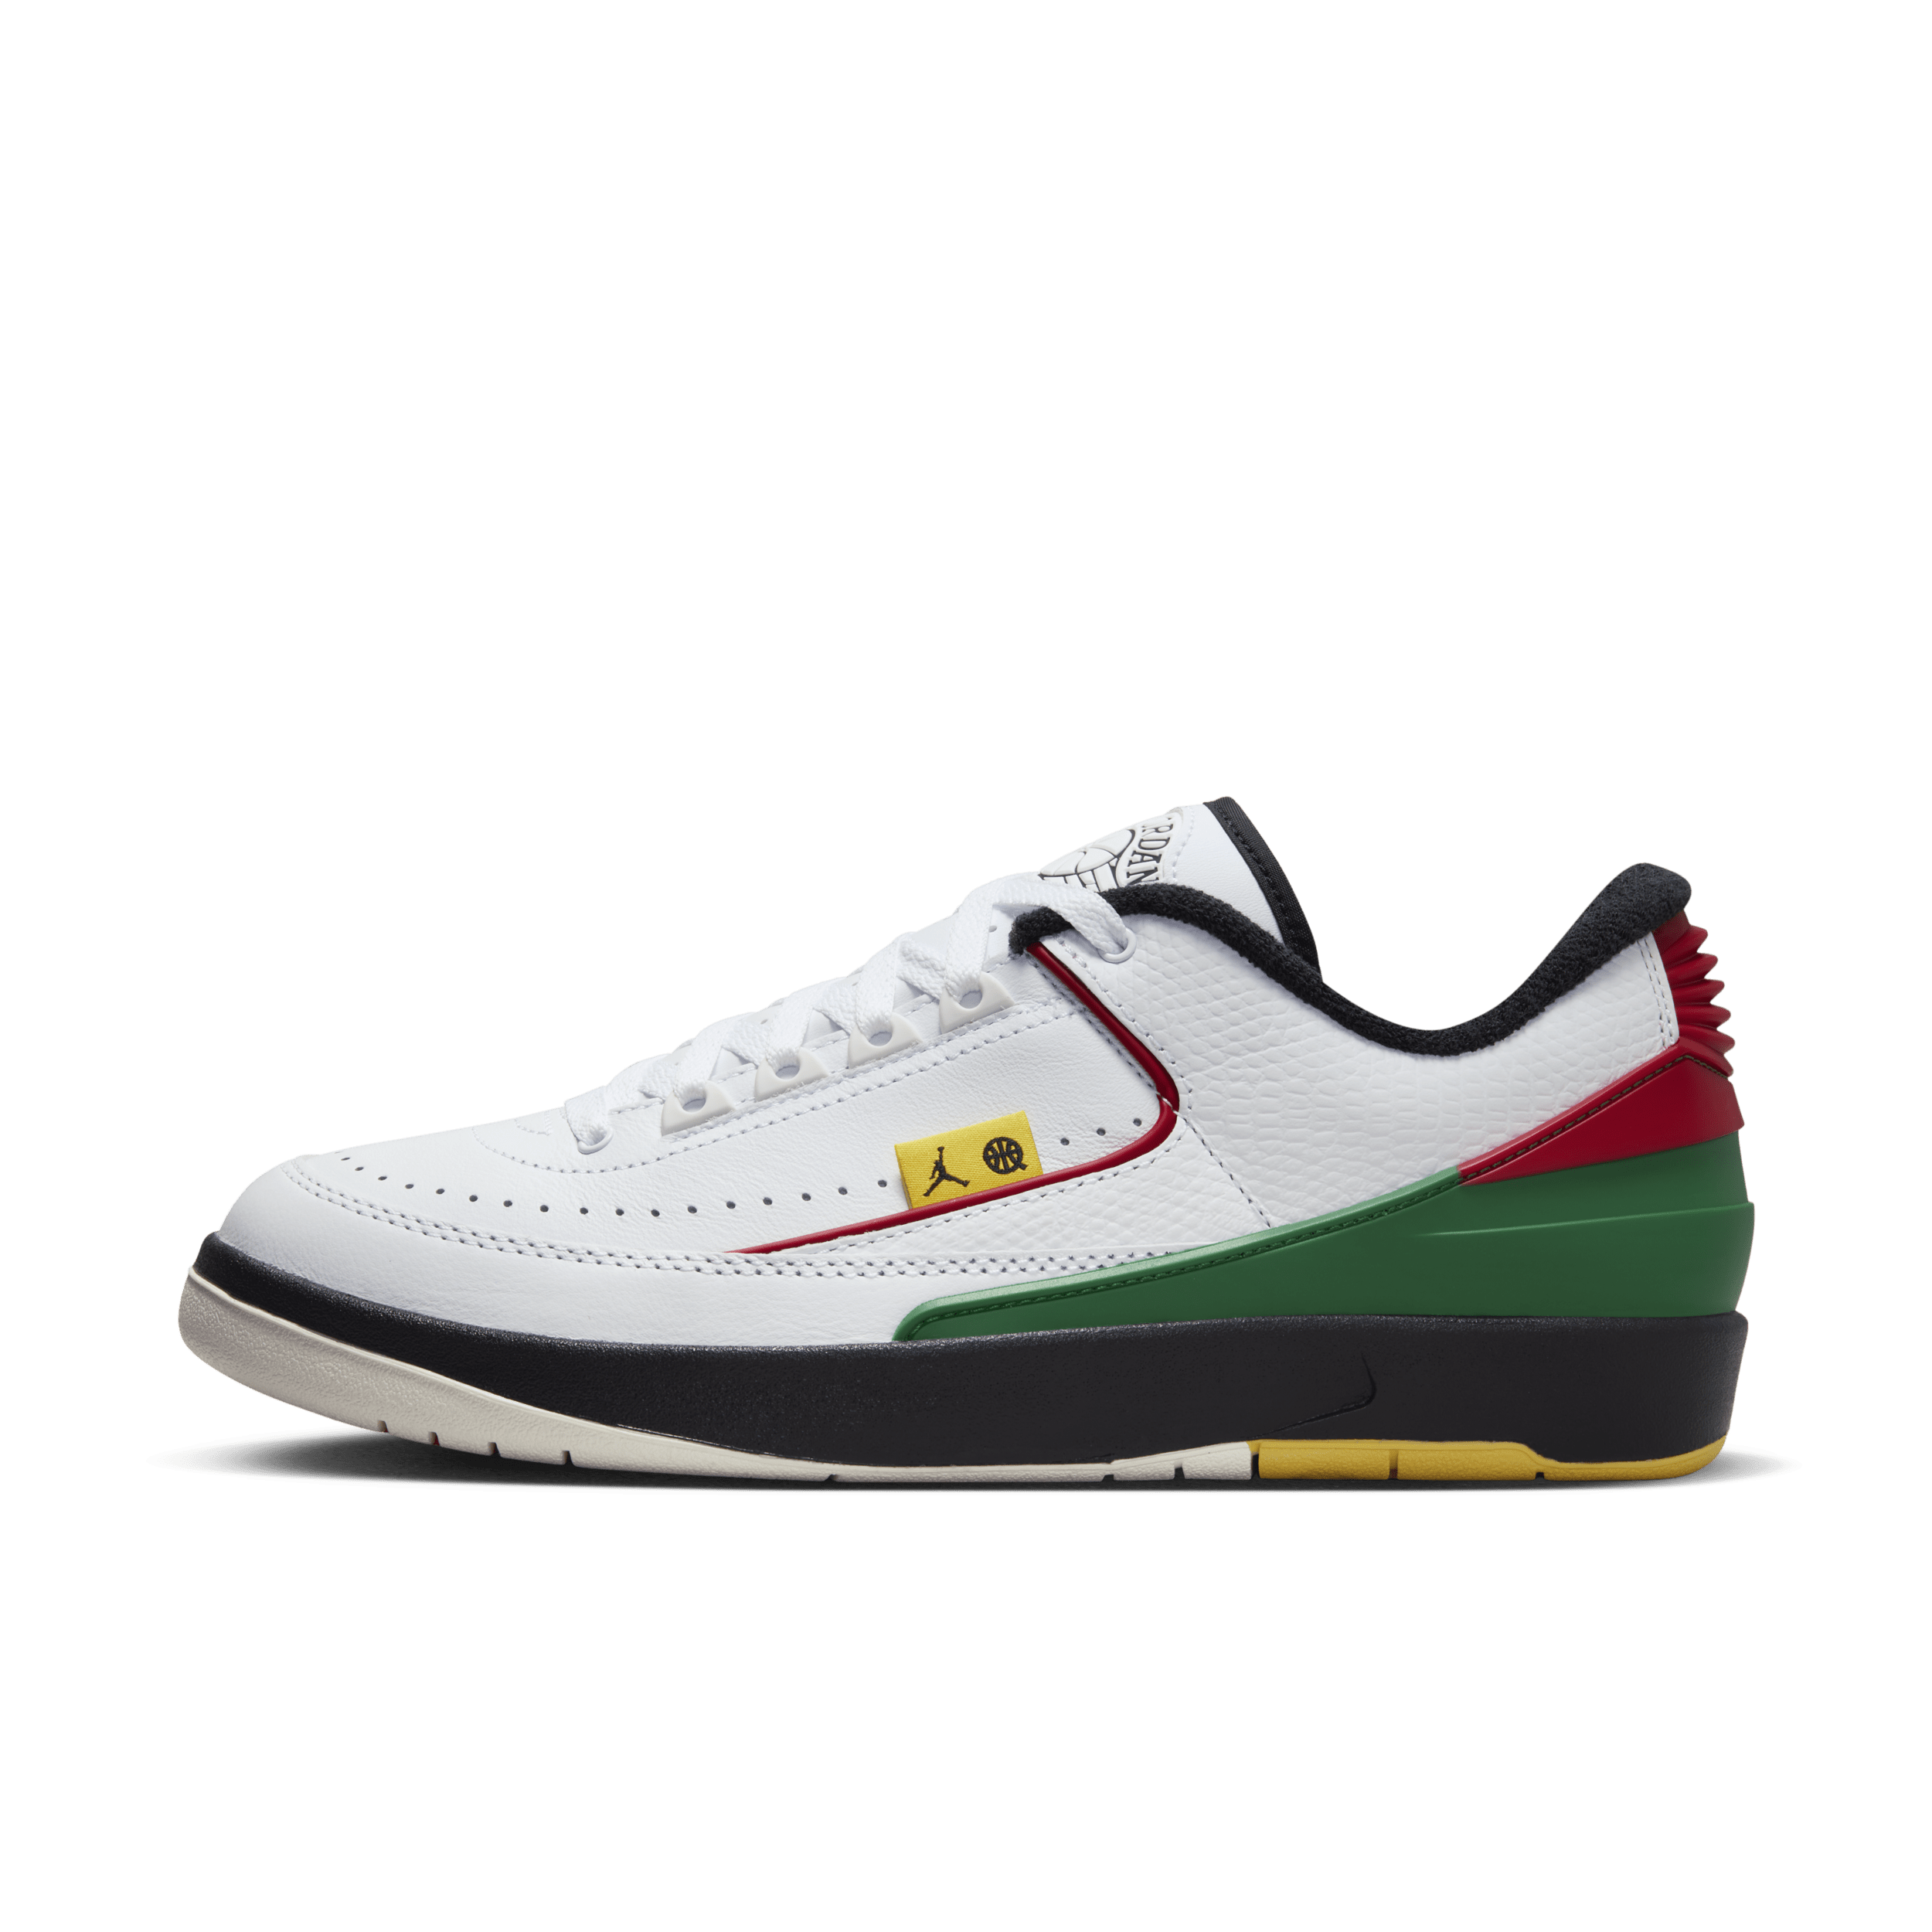 Air Jordan 5 Retro Low Quai 54-sko til mænd - hvid